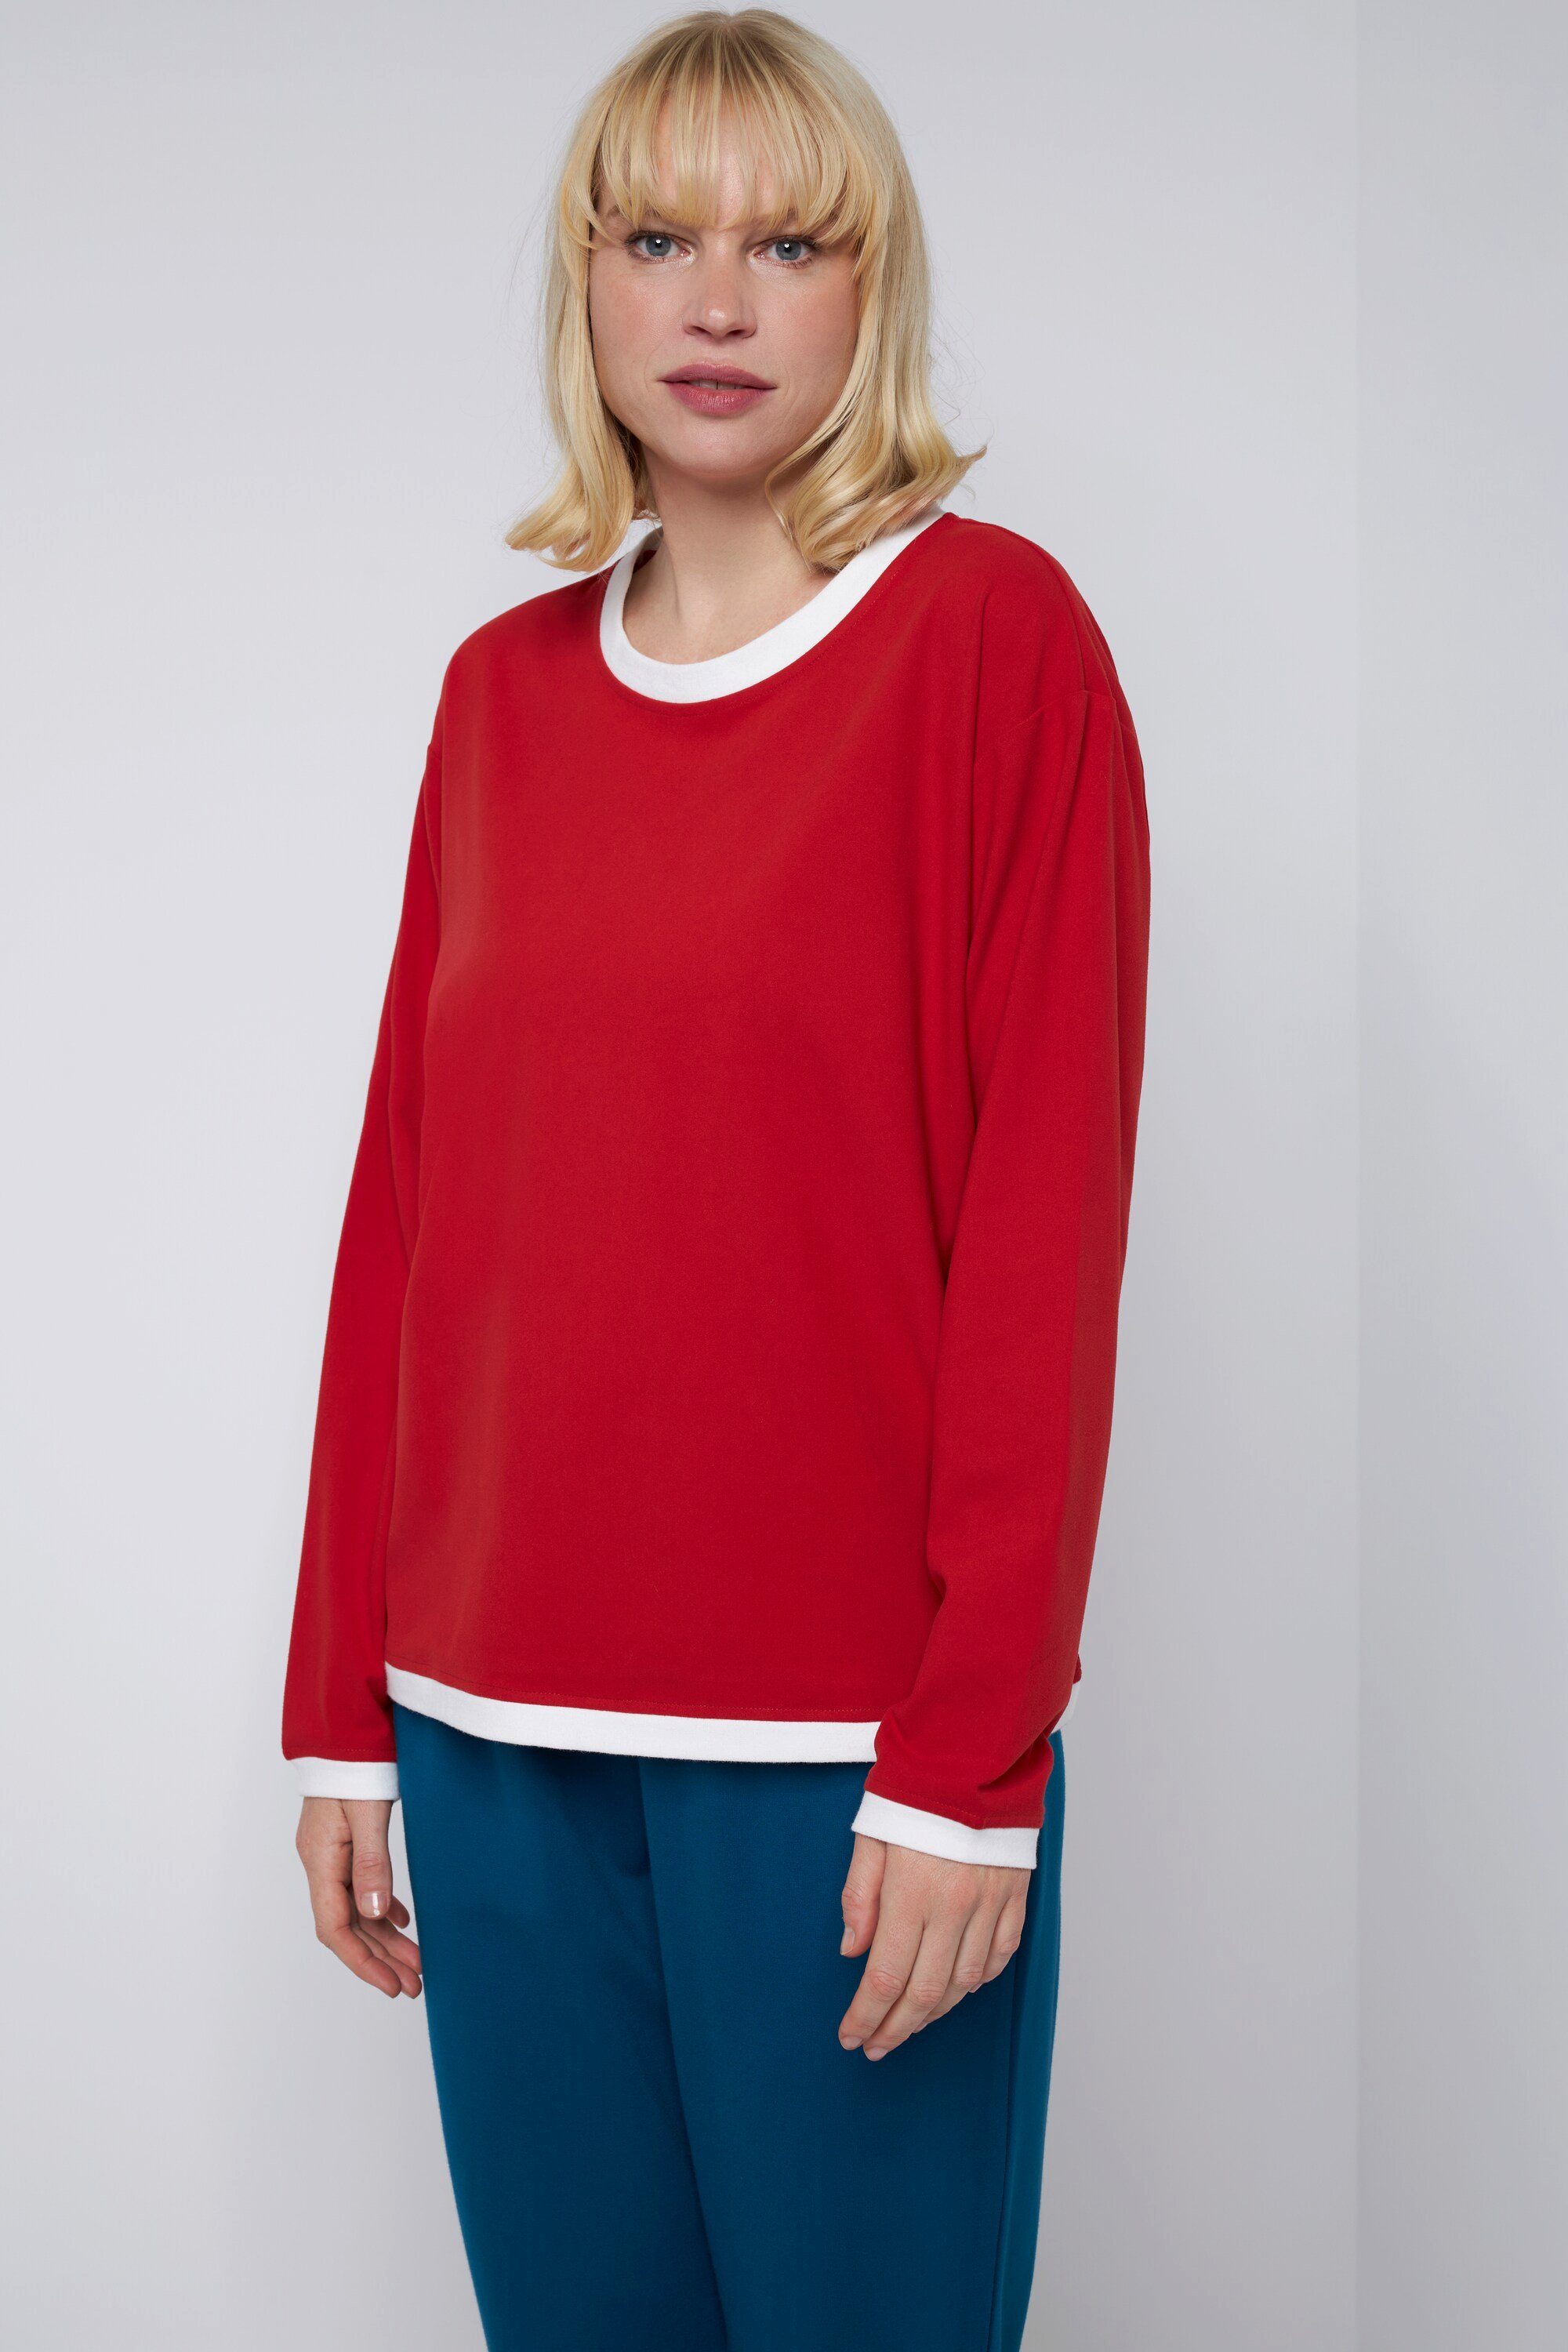 Laura Langarm Farb-Kontraste karminrot T-Shirt Longshirt Gina Rundhals